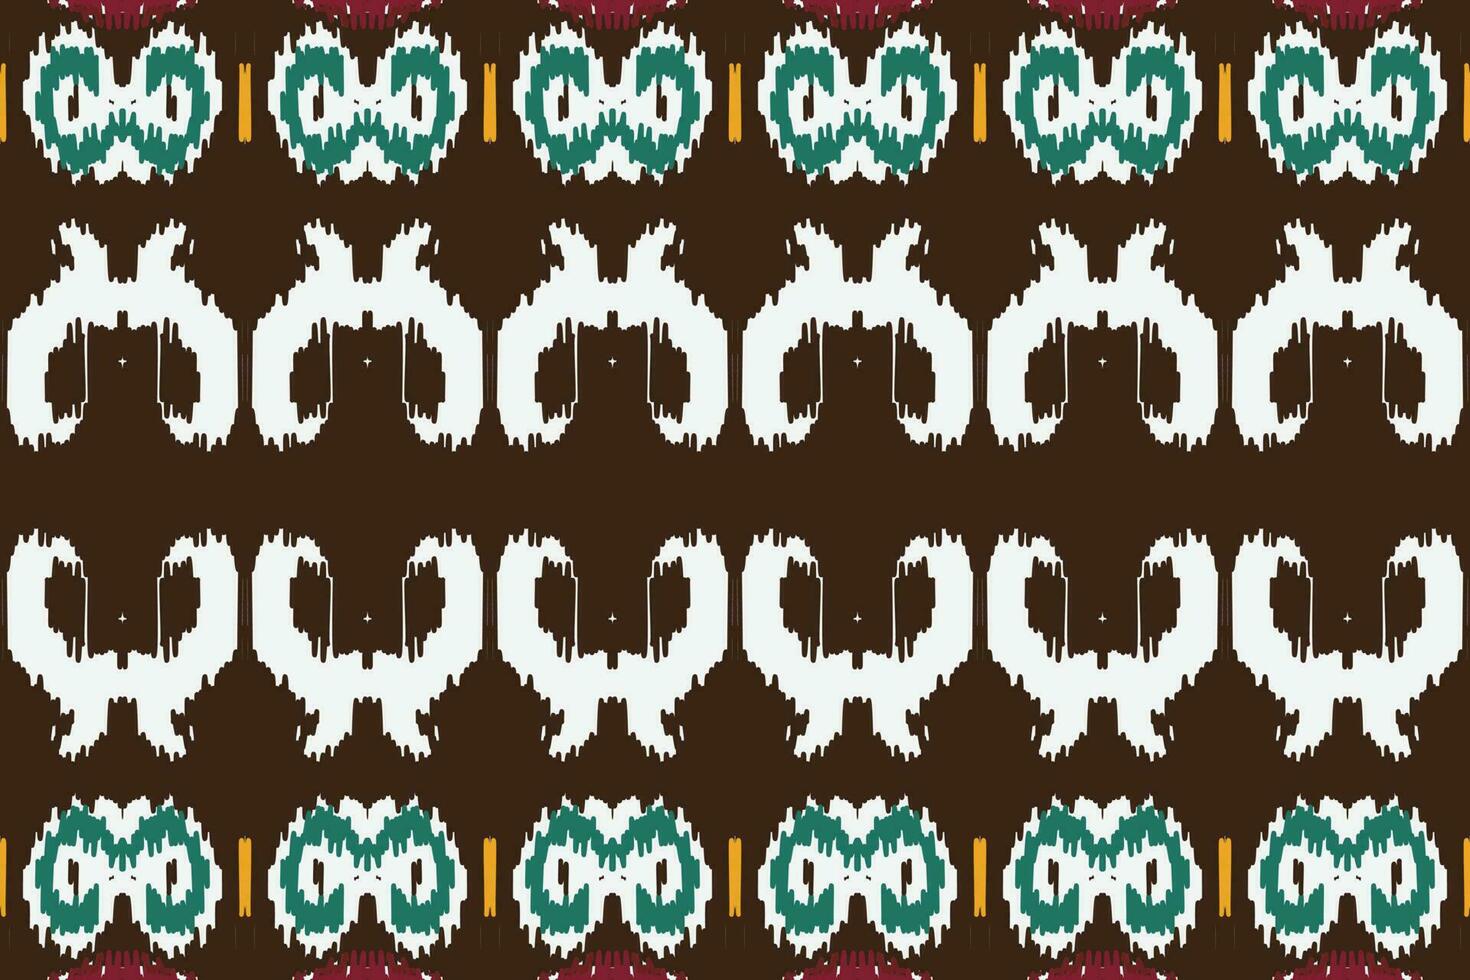 Afrikaanse ikat kleding stof paisley borduurwerk achtergrond. meetkundig etnisch oosters patroon traditioneel. ikat aztec stijl abstract vector illustratie. ontwerp voor afdrukken textuur,stof,sari,sari,tapijt.